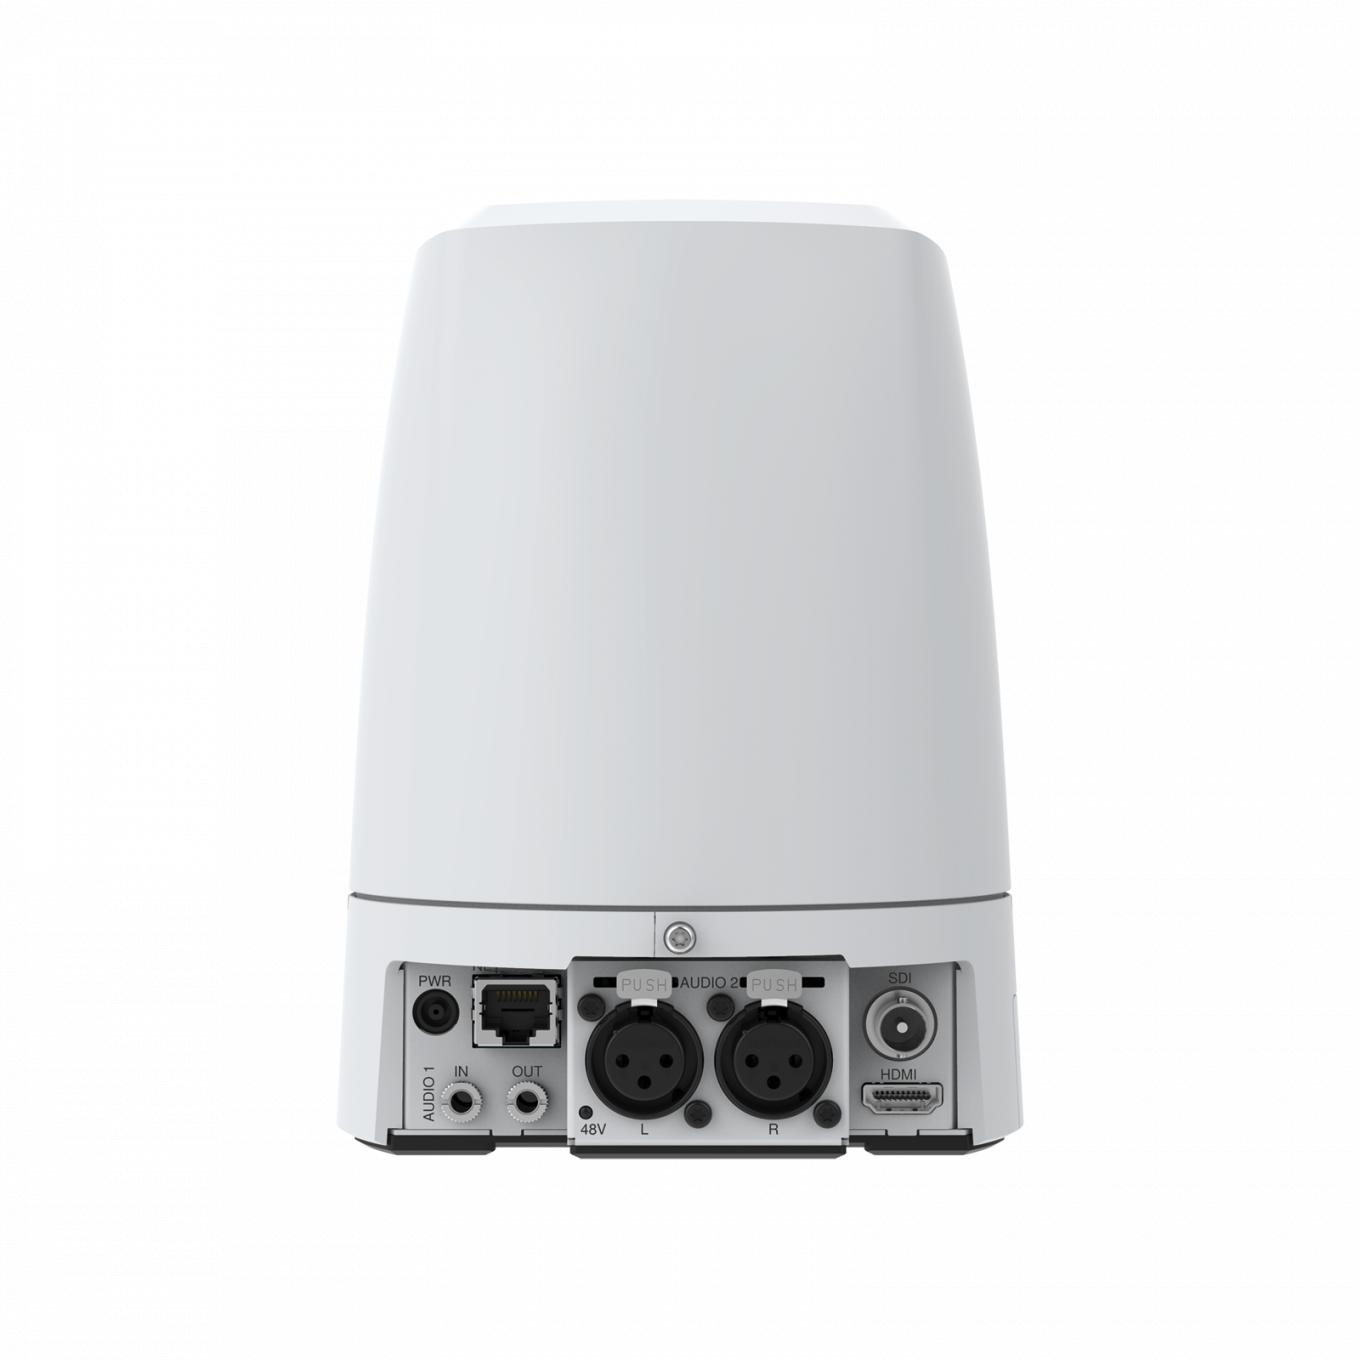 Die PTZ-Netzwerk-Kamera AXIS V5925 bietet VISCA- und VISCA over IP-Unterstützung